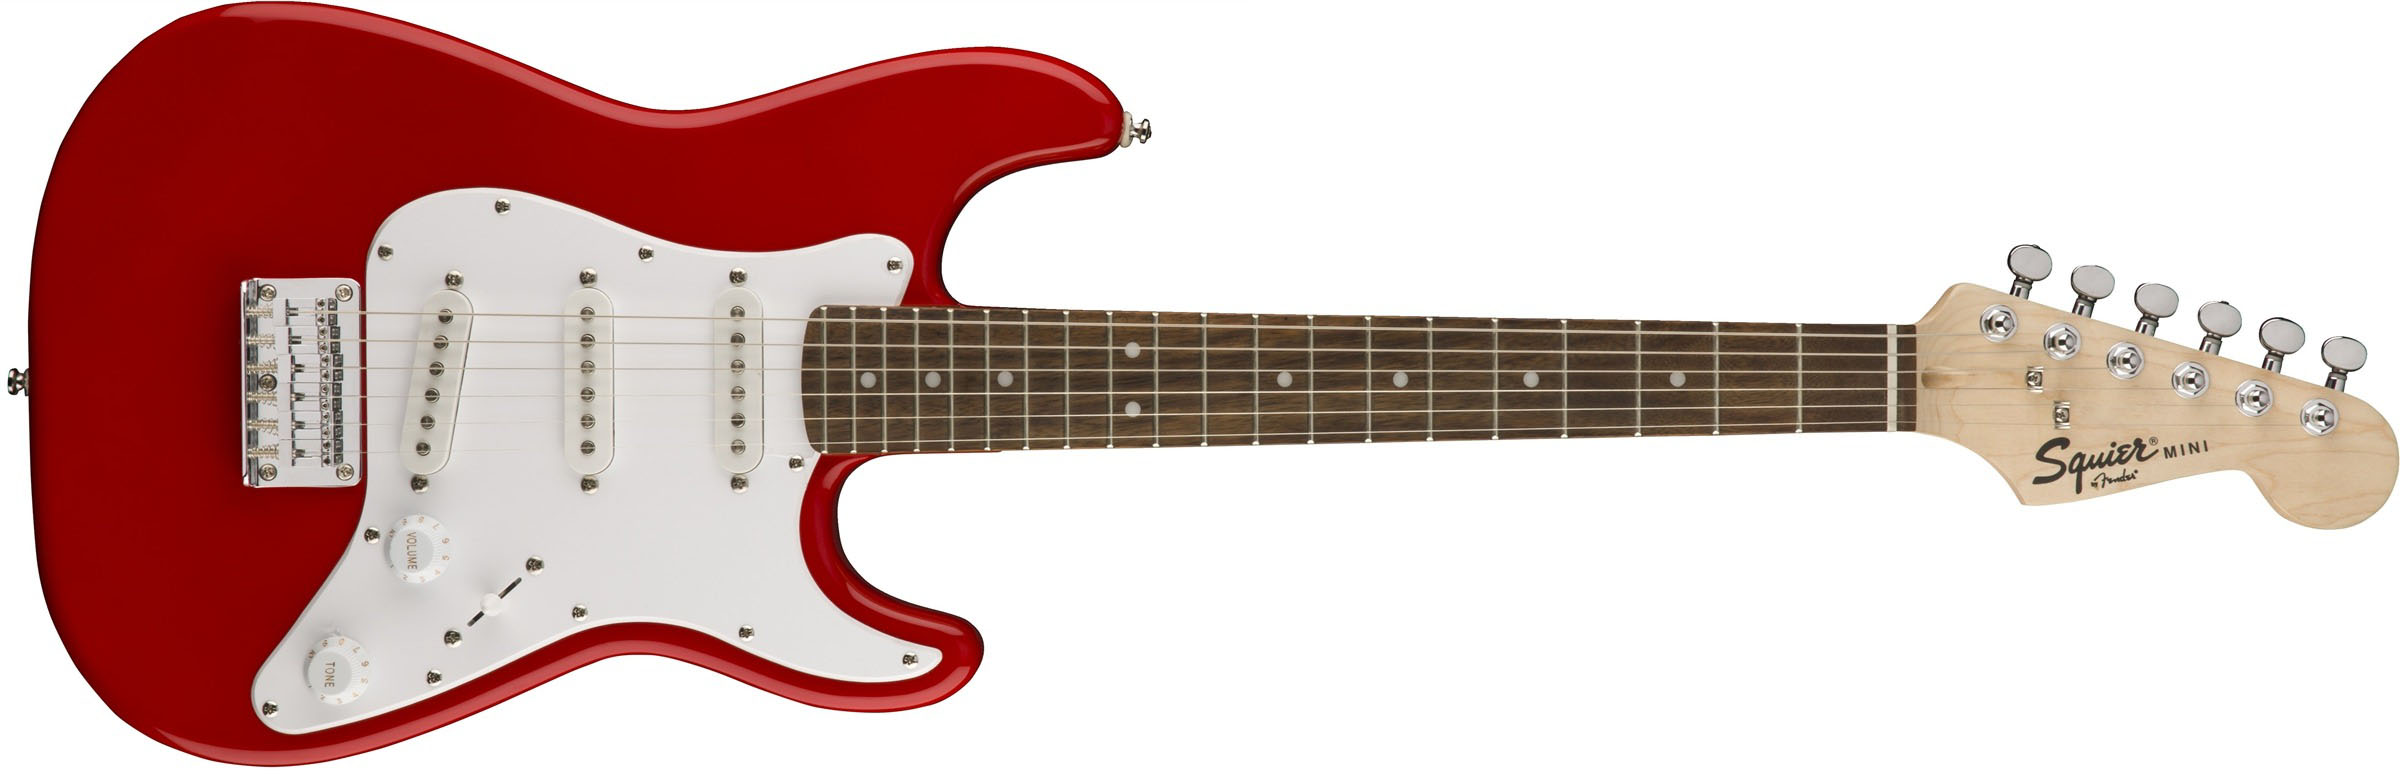 Fender Squier Mini Strat V2 T   RD   Електрогітара зменшена (7-11 років)   Прекрасний варіант від відомого бренду